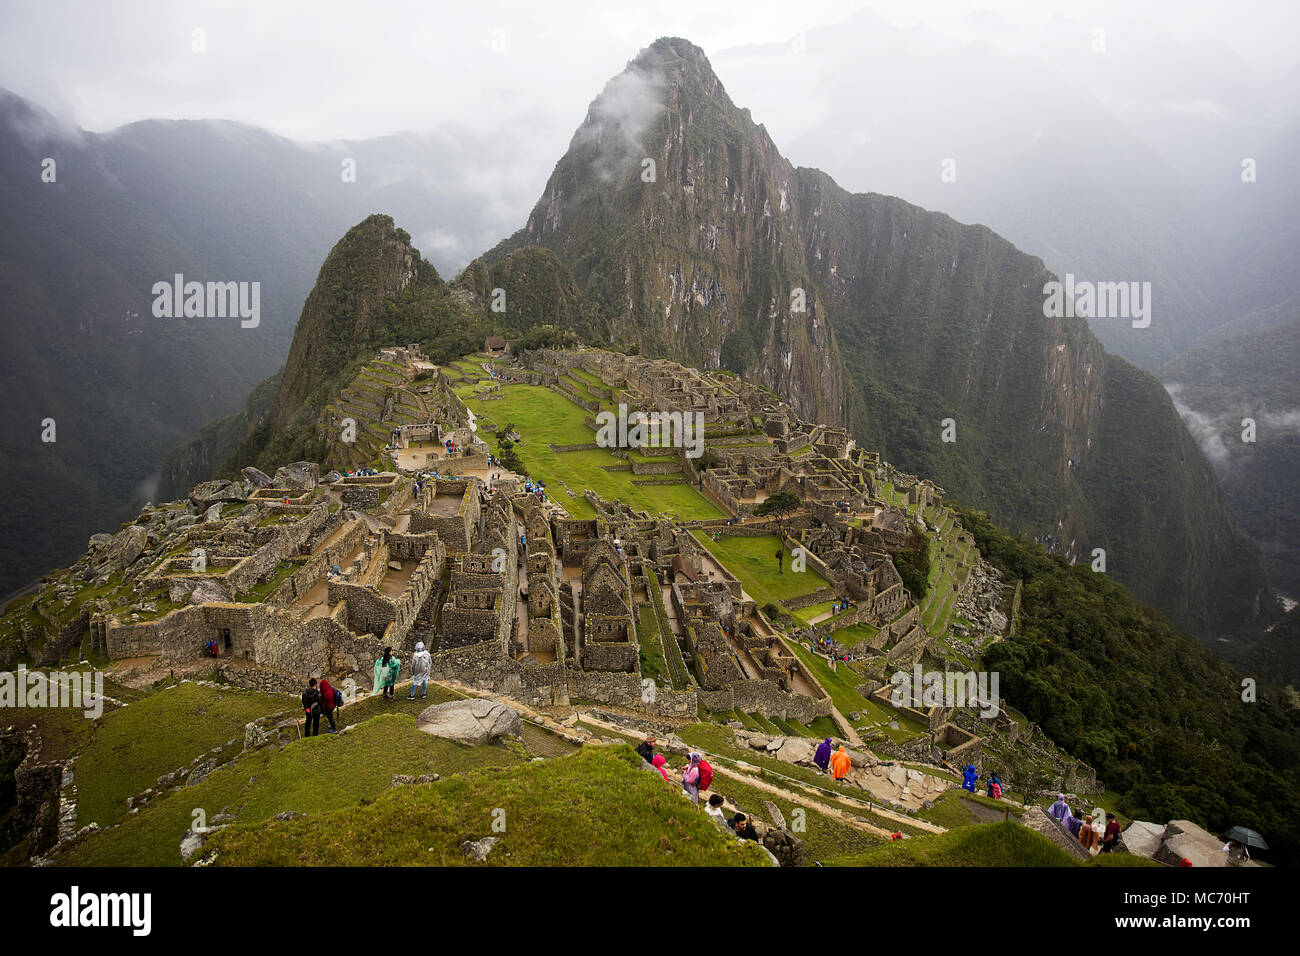 Aerial view at Machu Picchu ruins in Peru Stock Photo